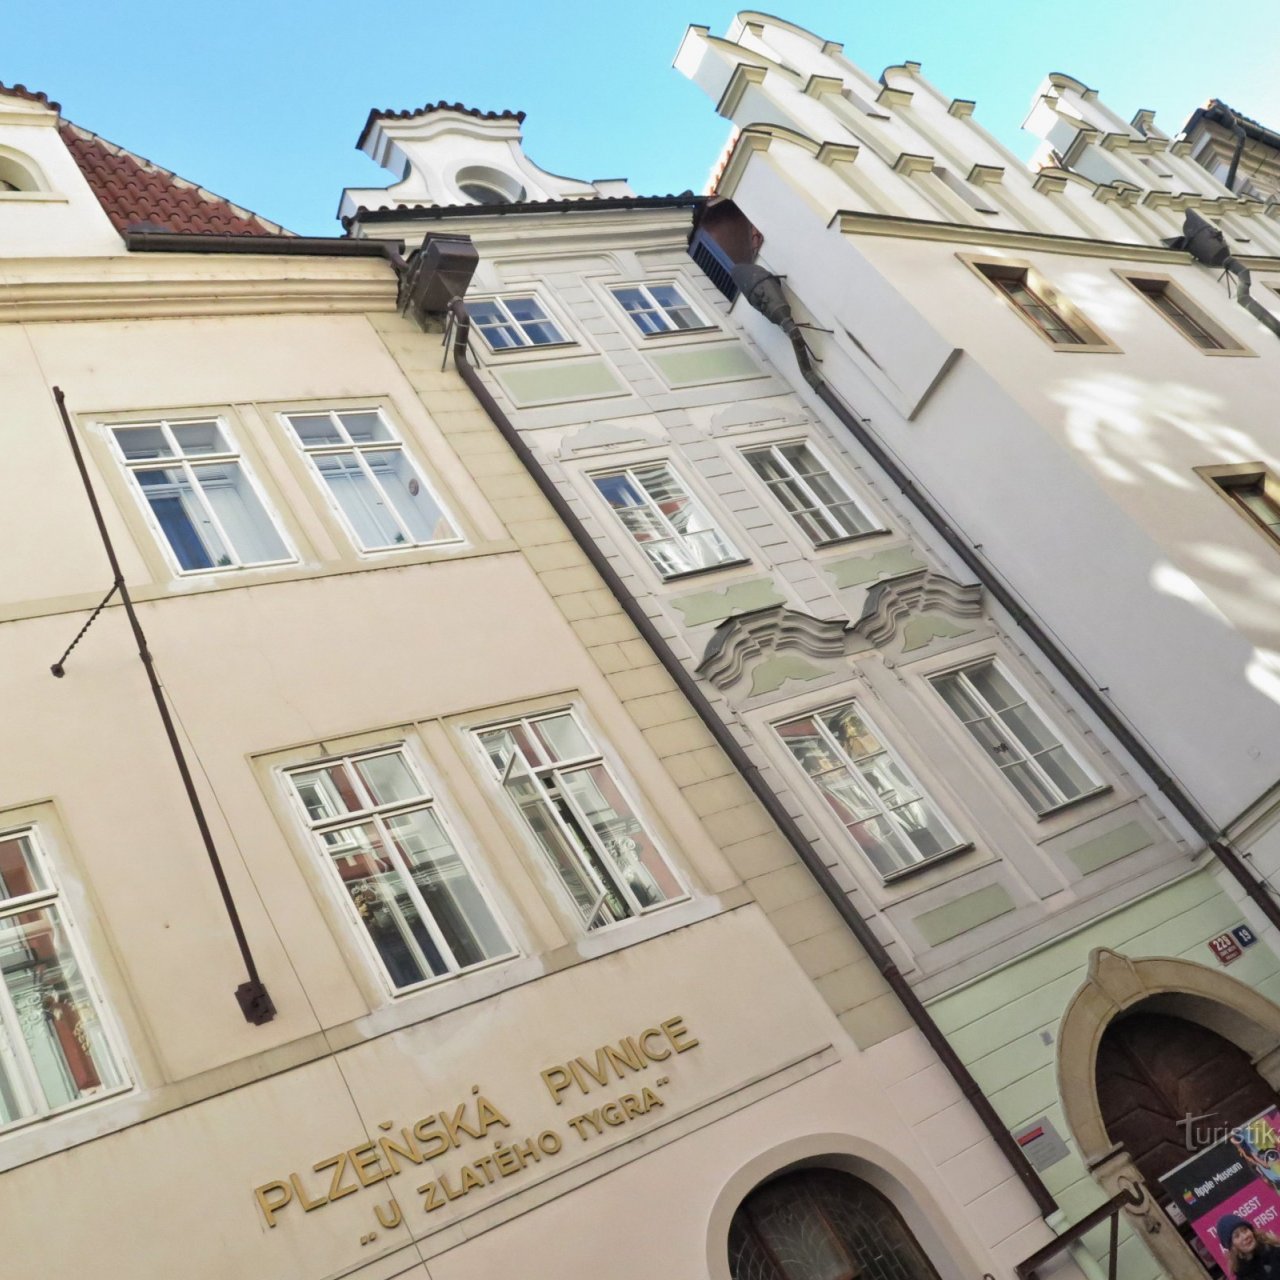 Praha (Staré Město) - domy v Husově ulici